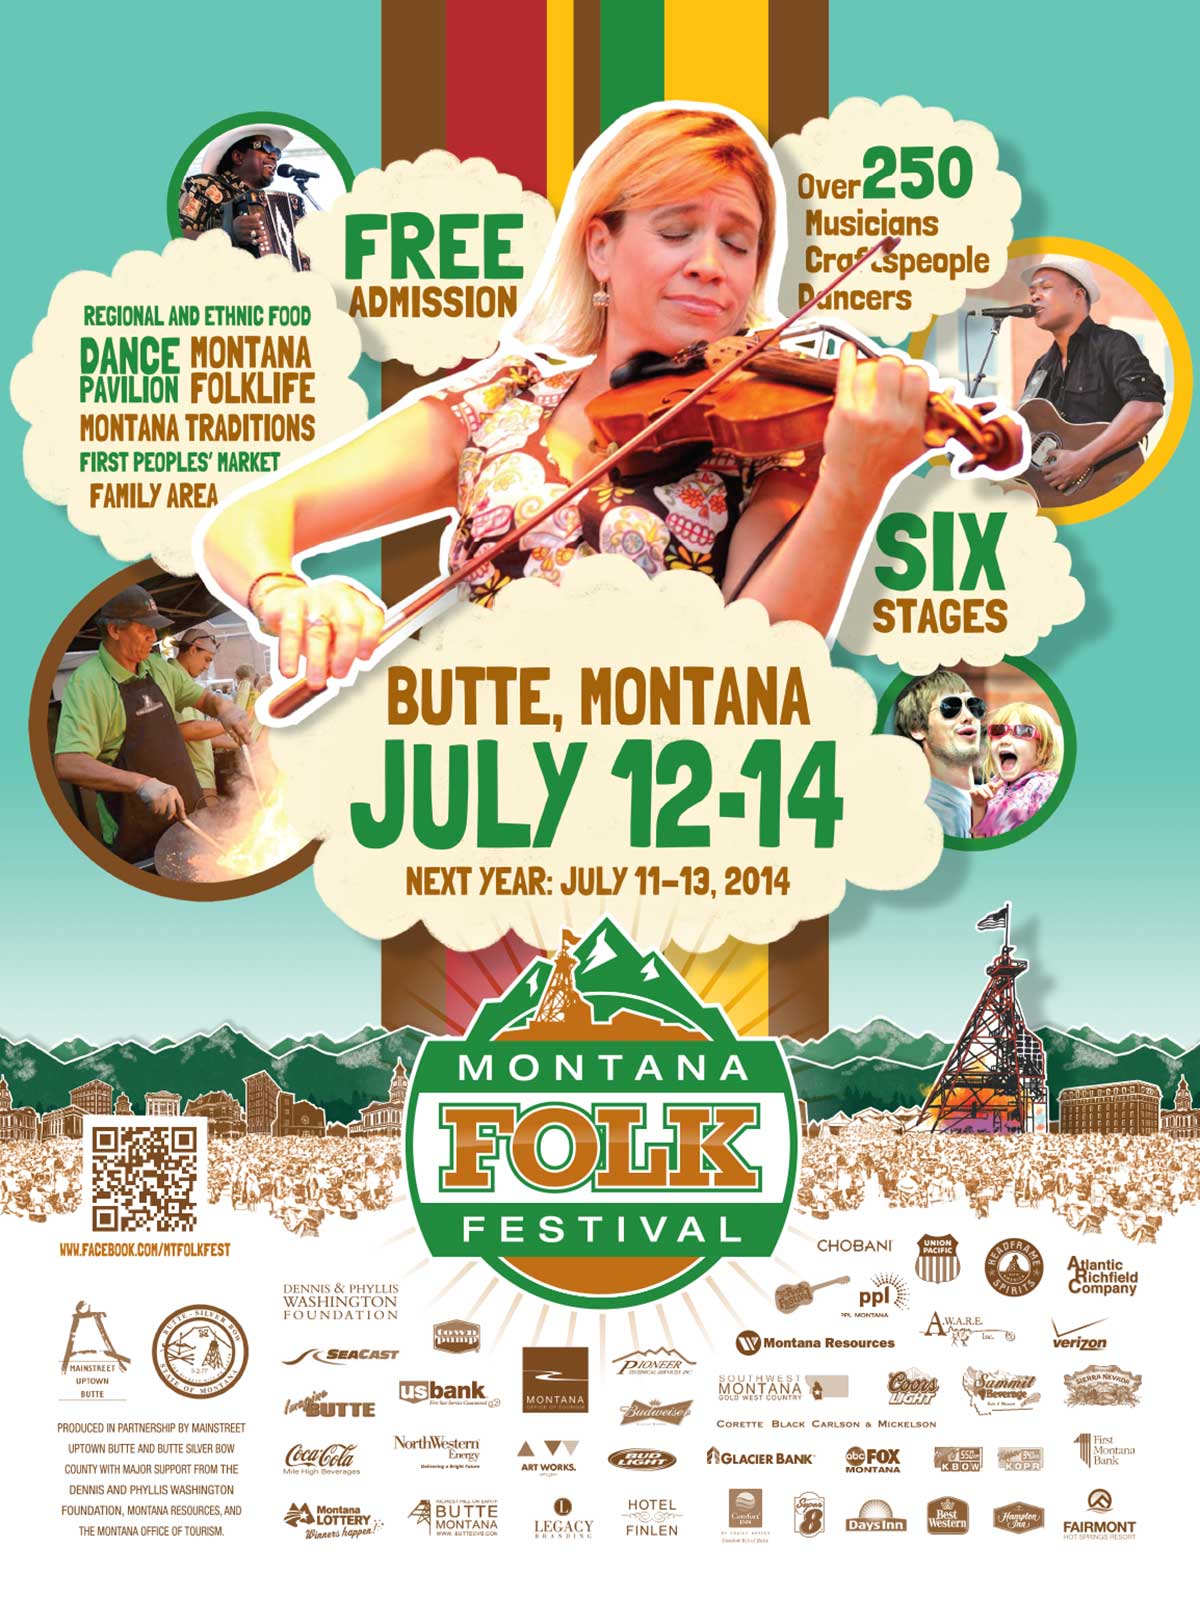 2013 Montana Folk Festival Poster